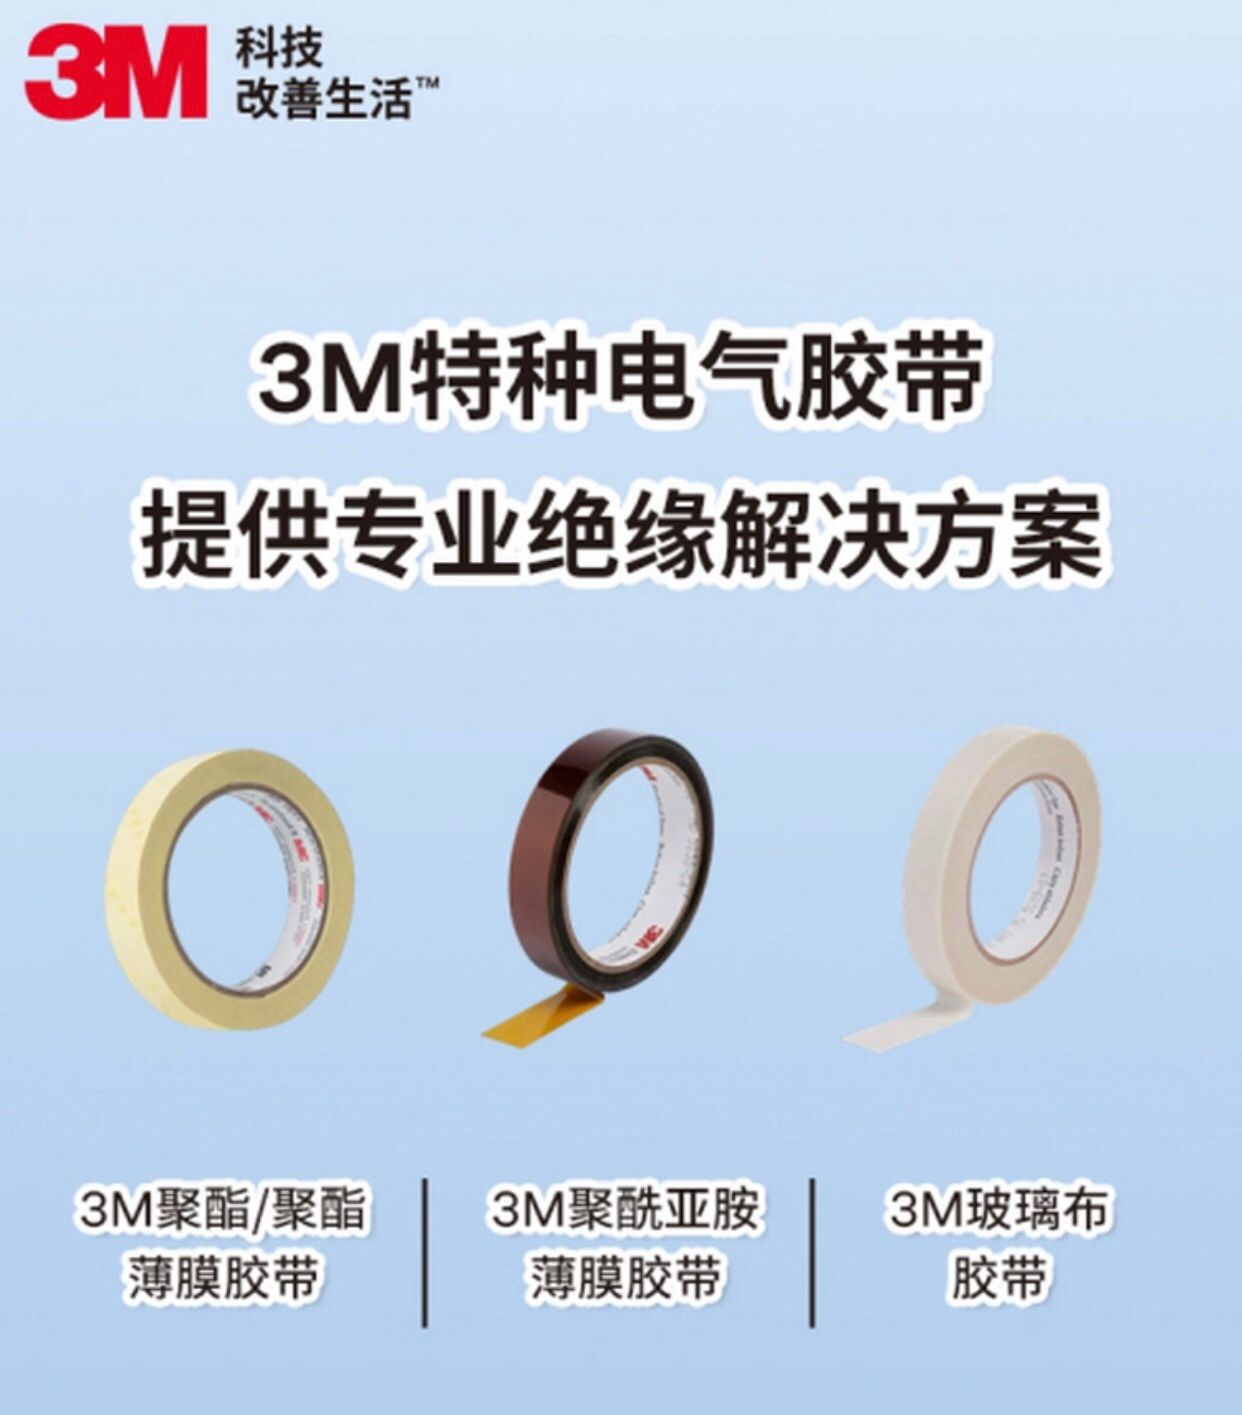 3M提供高效、可靠的特种电气胶带材料助力中国制造！